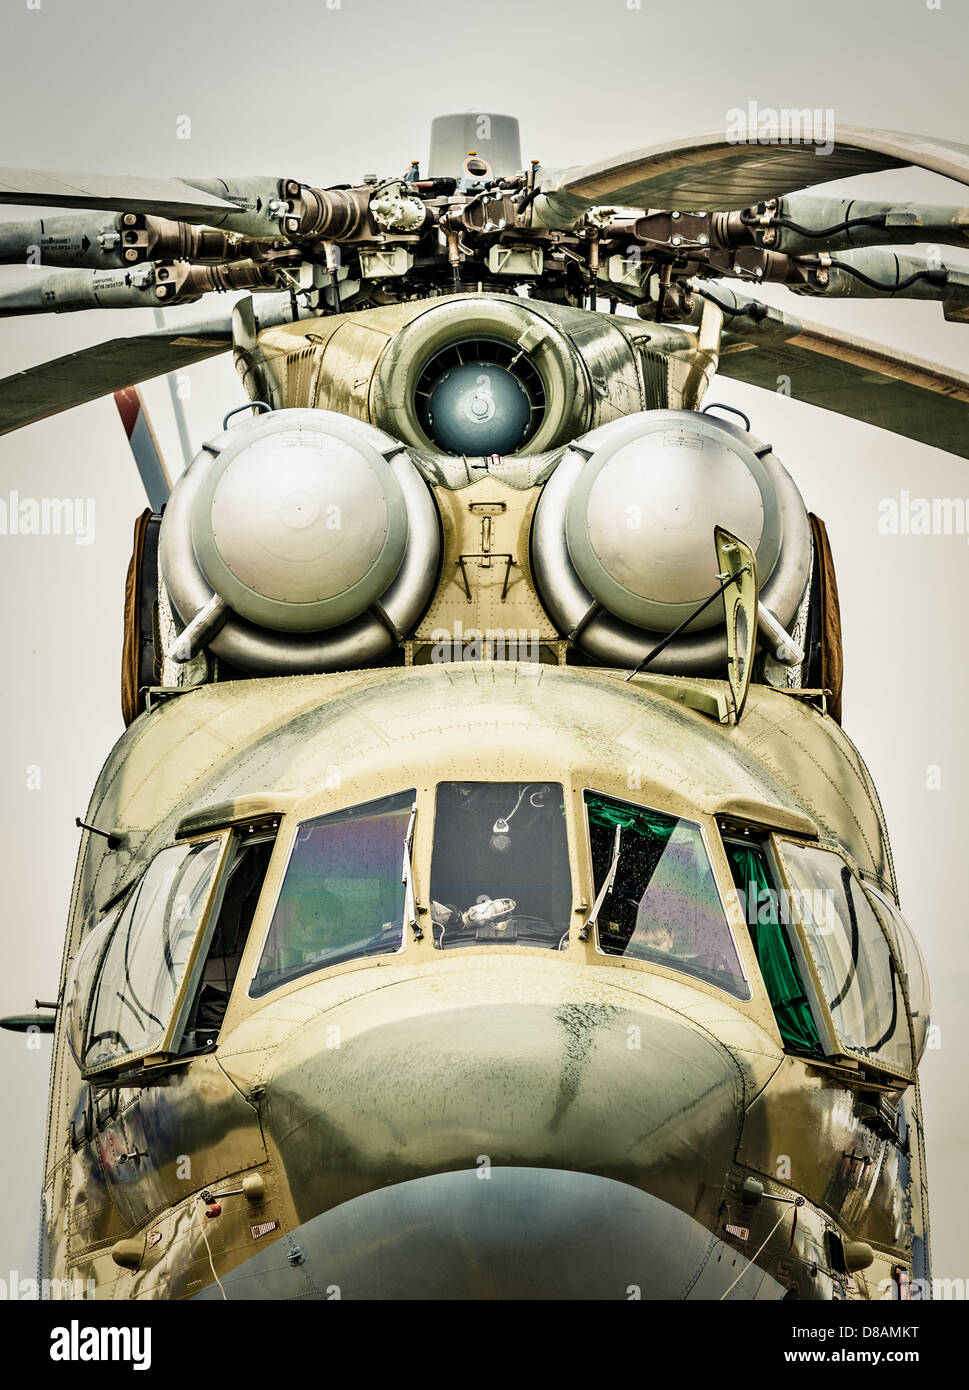 Fokus auf Fenster des Cockpits und Propeller der russischen Militärhubschrauber, grauen Himmel im Hintergrund. Armee-Luft-Transport in Russland. Stockfoto